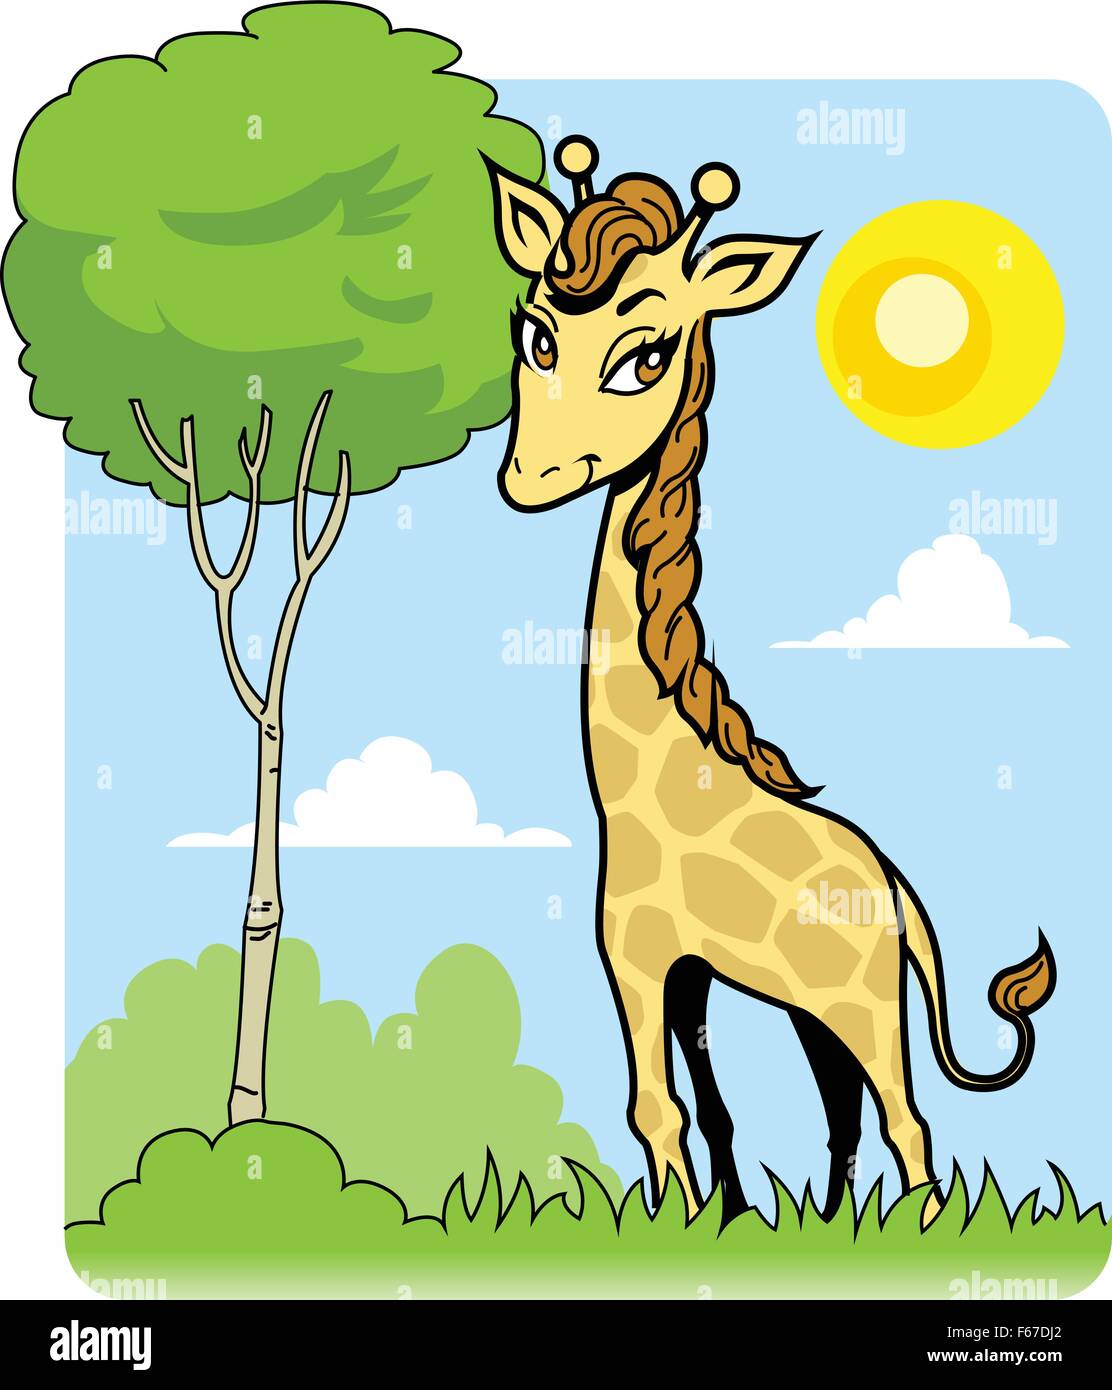 Niedliche Giraffe mit schönen Augen und Baum Stock Vektor